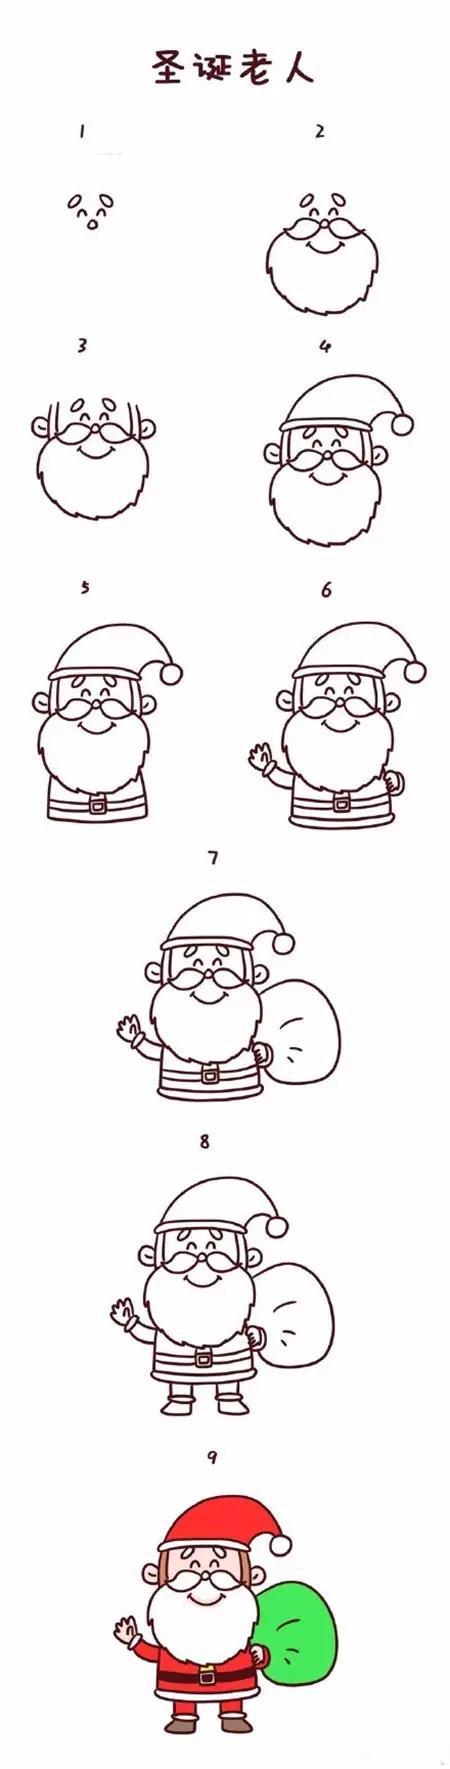 圣诞节图片大全简笔画图片 简单又可爱的圣诞节简笔画